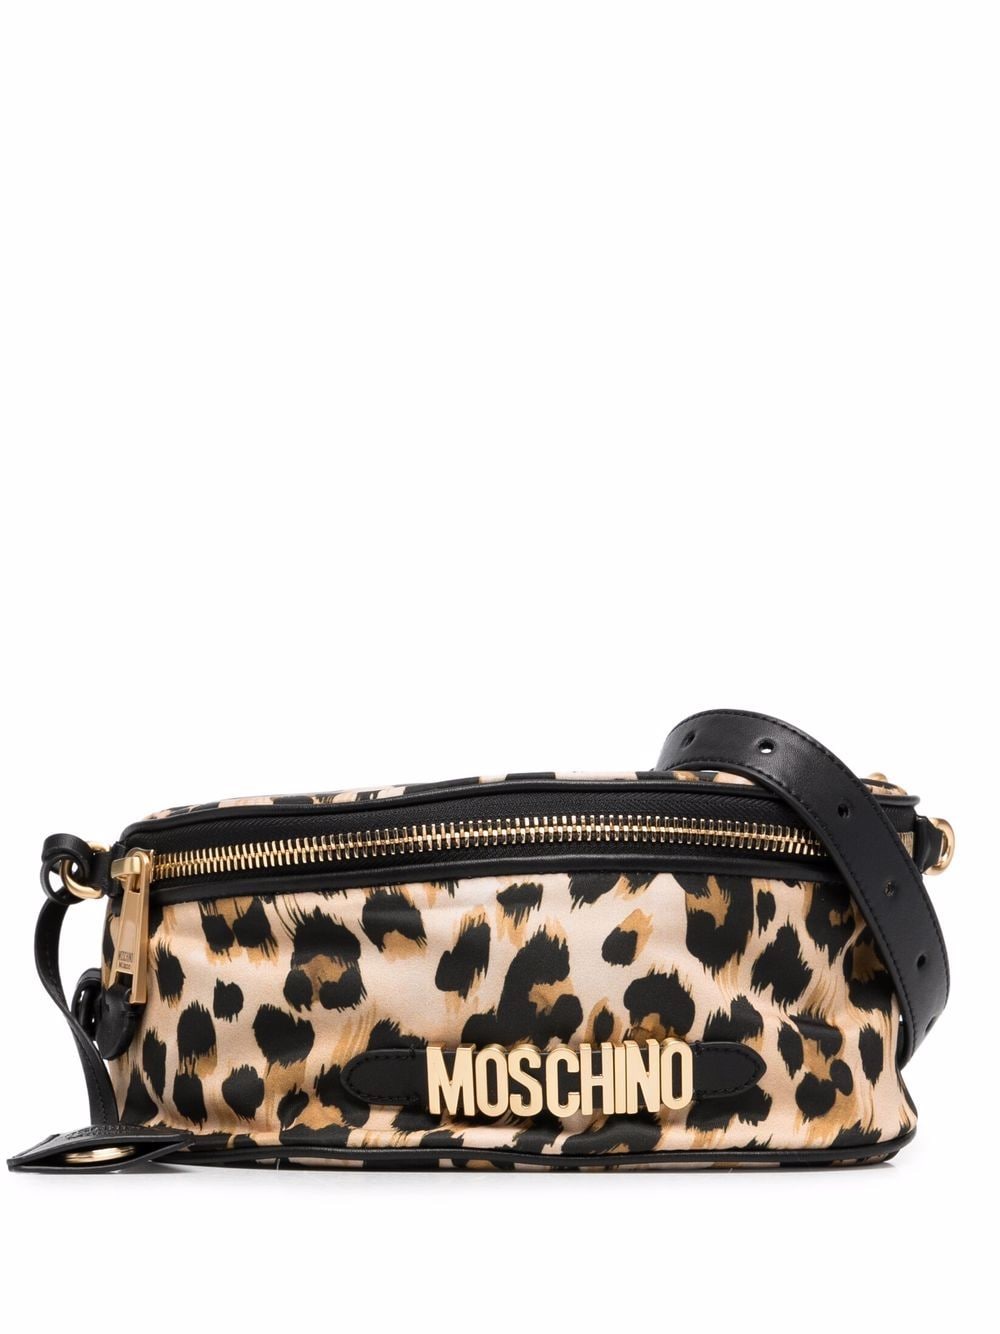 фото Moschino поясная сумка с леопардовым принтом